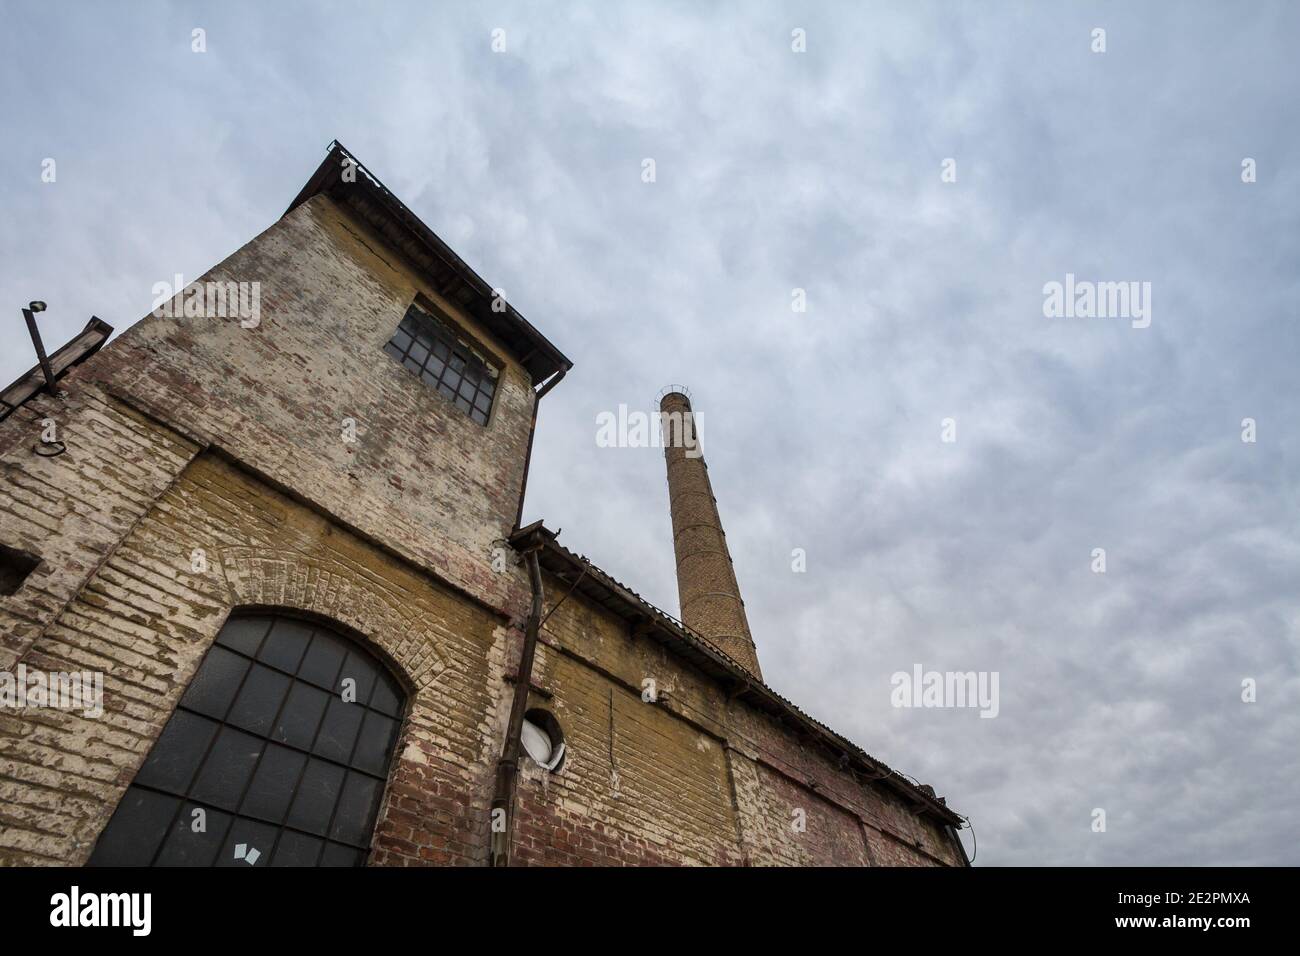 Abbandonata fabbrica e magazzino con il suo caratteristico camino in mattoni nell'Europa orientale, a Belgrado, Serbia, ex Jugoslavia, durante un pomeriggio nuvoloso Foto Stock